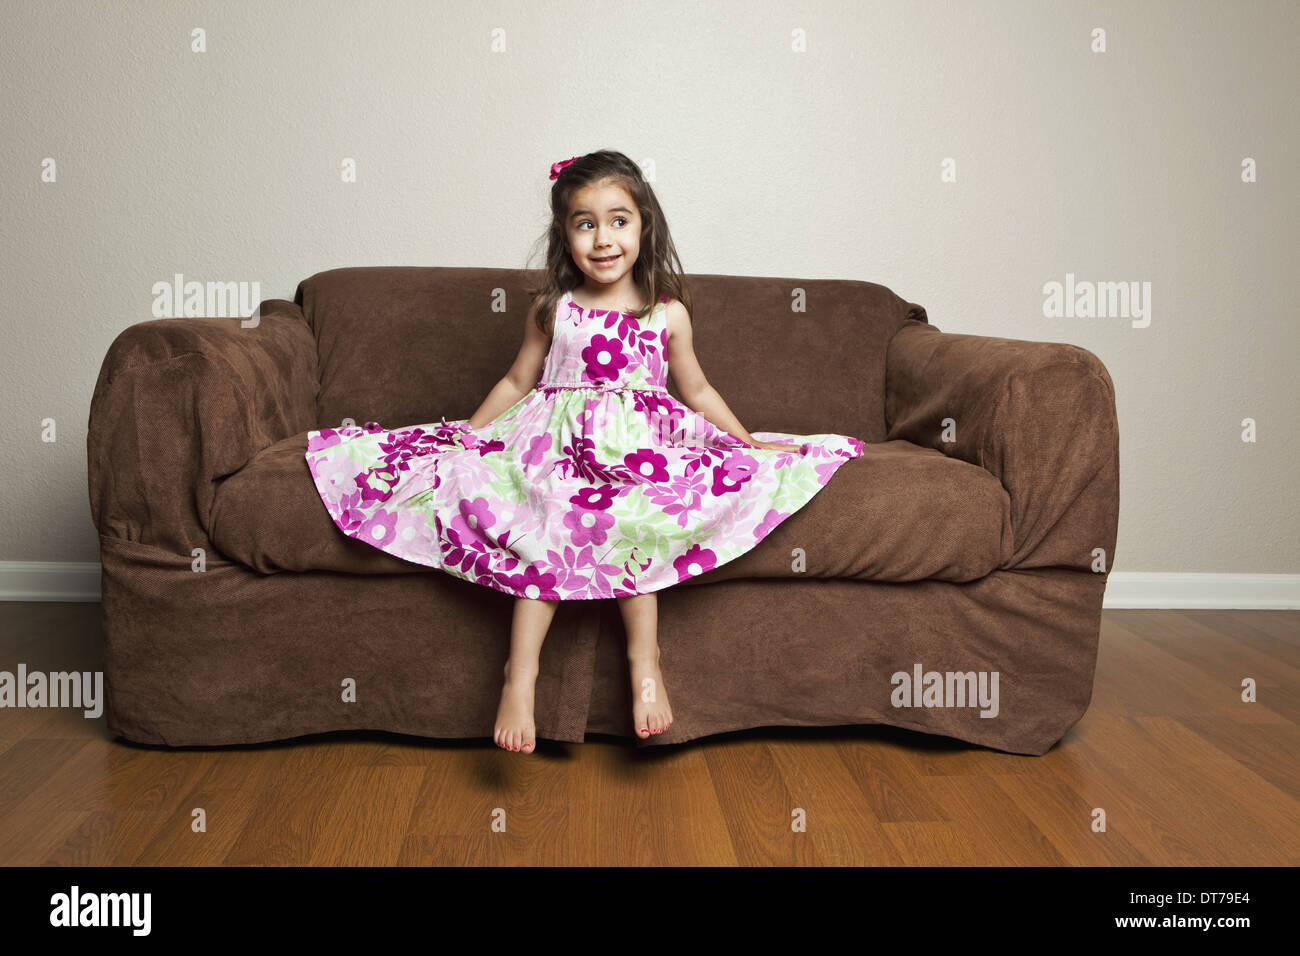 Una niña de 3 años de edad con el cabello largo en un vestido de algodón con flores rosas con la falda extendida, en un sofá de color